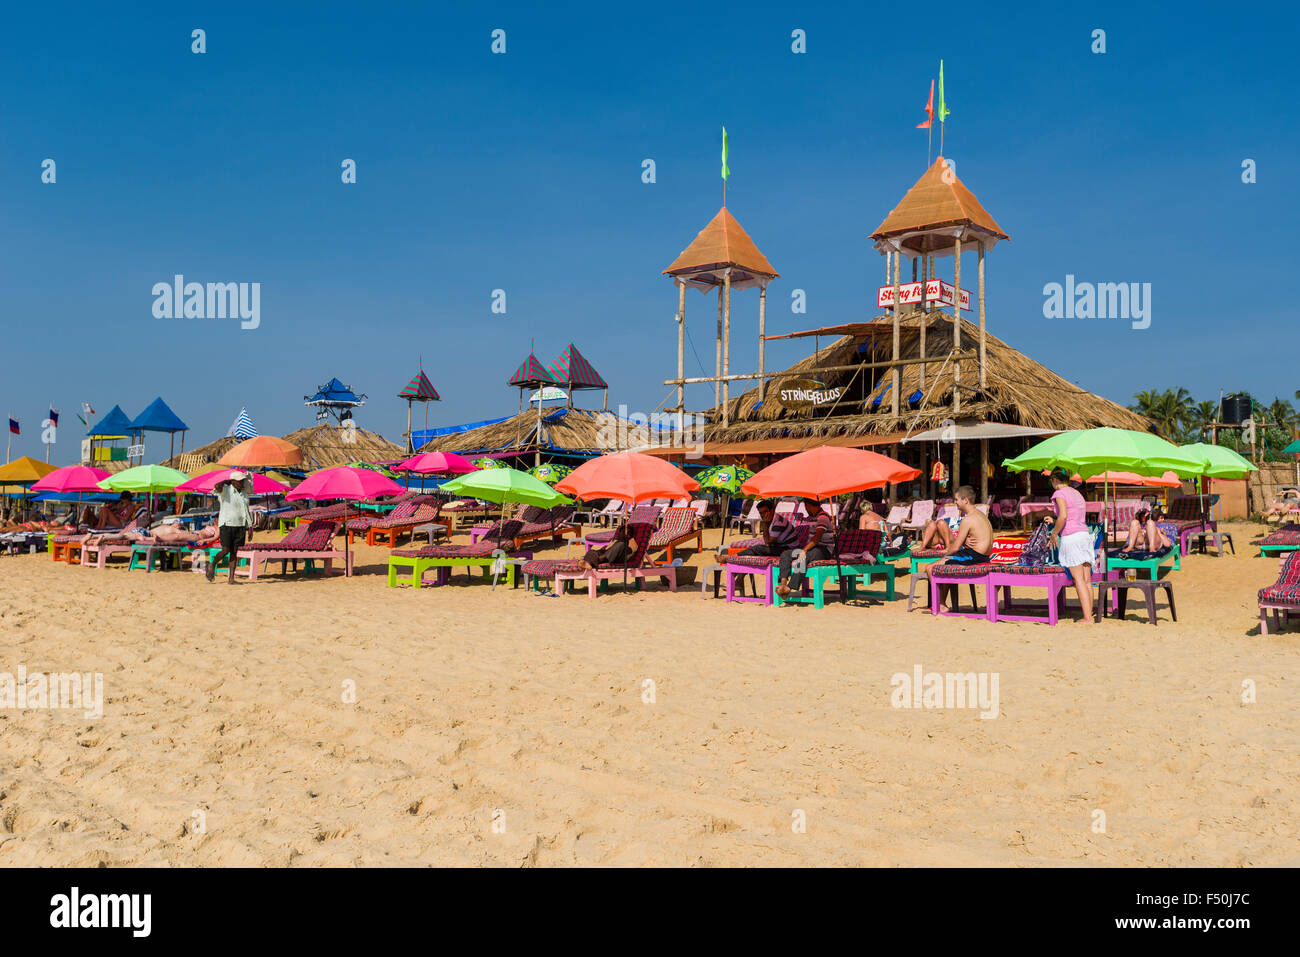 La plage de candolim avec parasols, sable blanc et bleu ciel est l'une des célèbres plages de l'ancienne colonie portugaise de Goa Banque D'Images